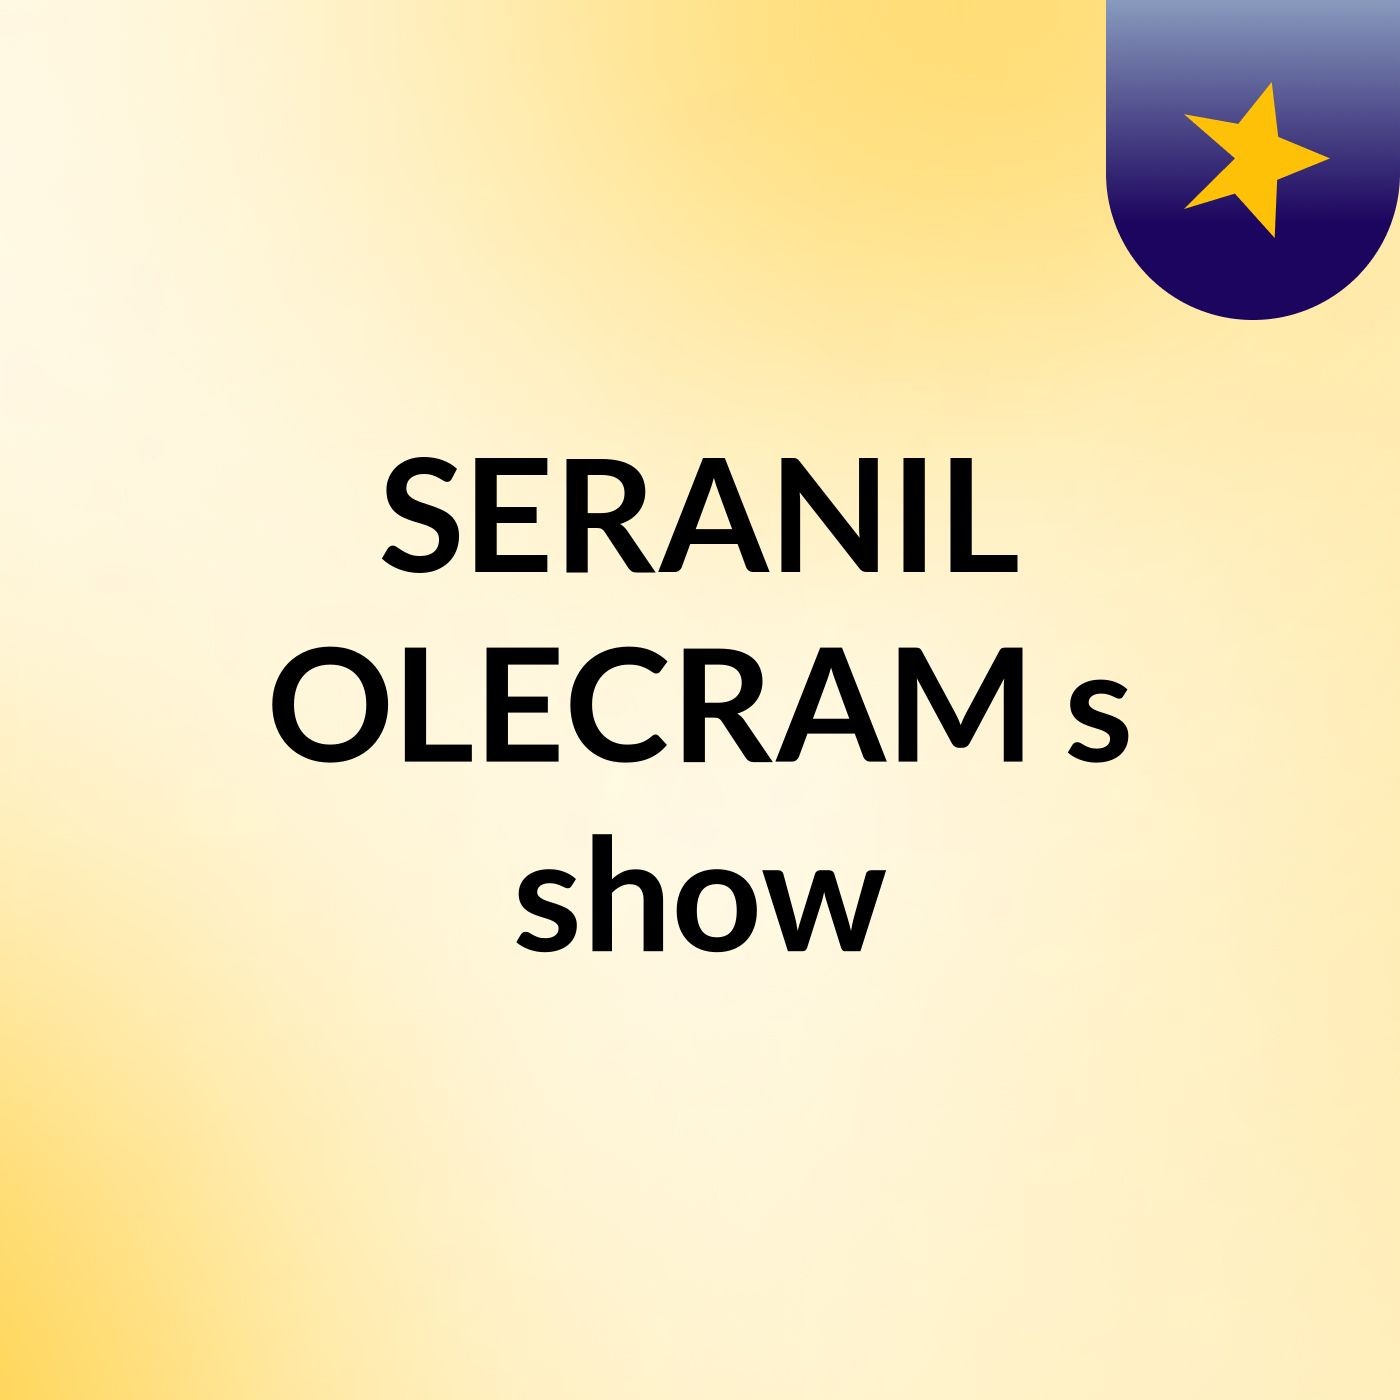 SERANIL OLECRAM's show